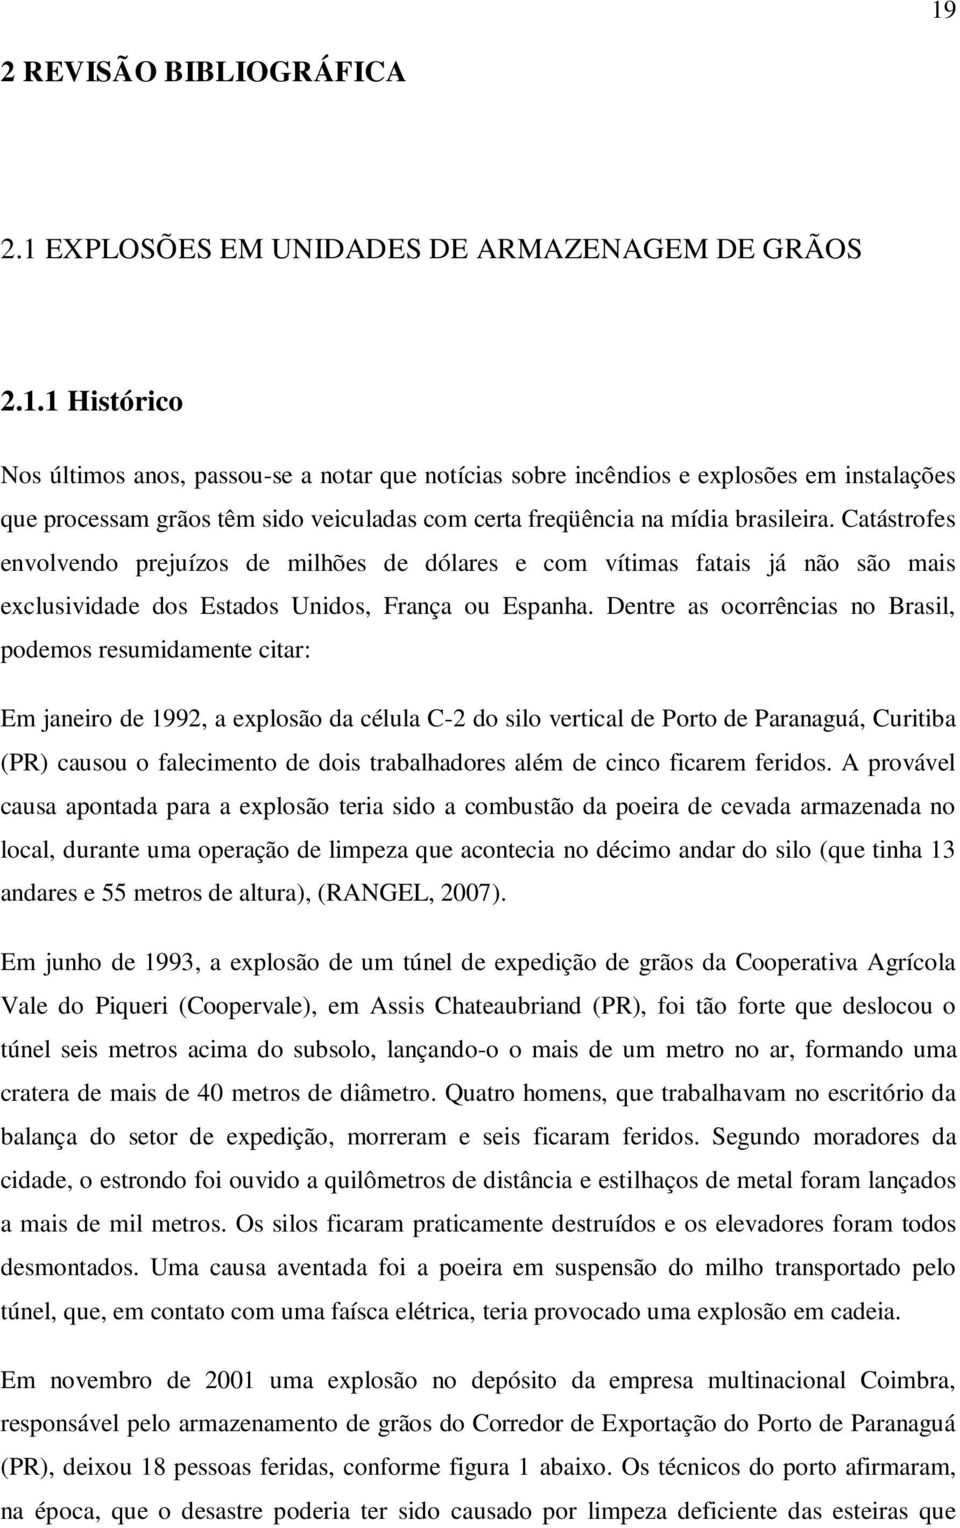 Dentre as ocorrências no Brasil, podemos resumidamente citar: Em janeiro de 1992, a explosão da célula C-2 do silo vertical de Porto de Paranaguá, Curitiba (PR) causou o falecimento de dois